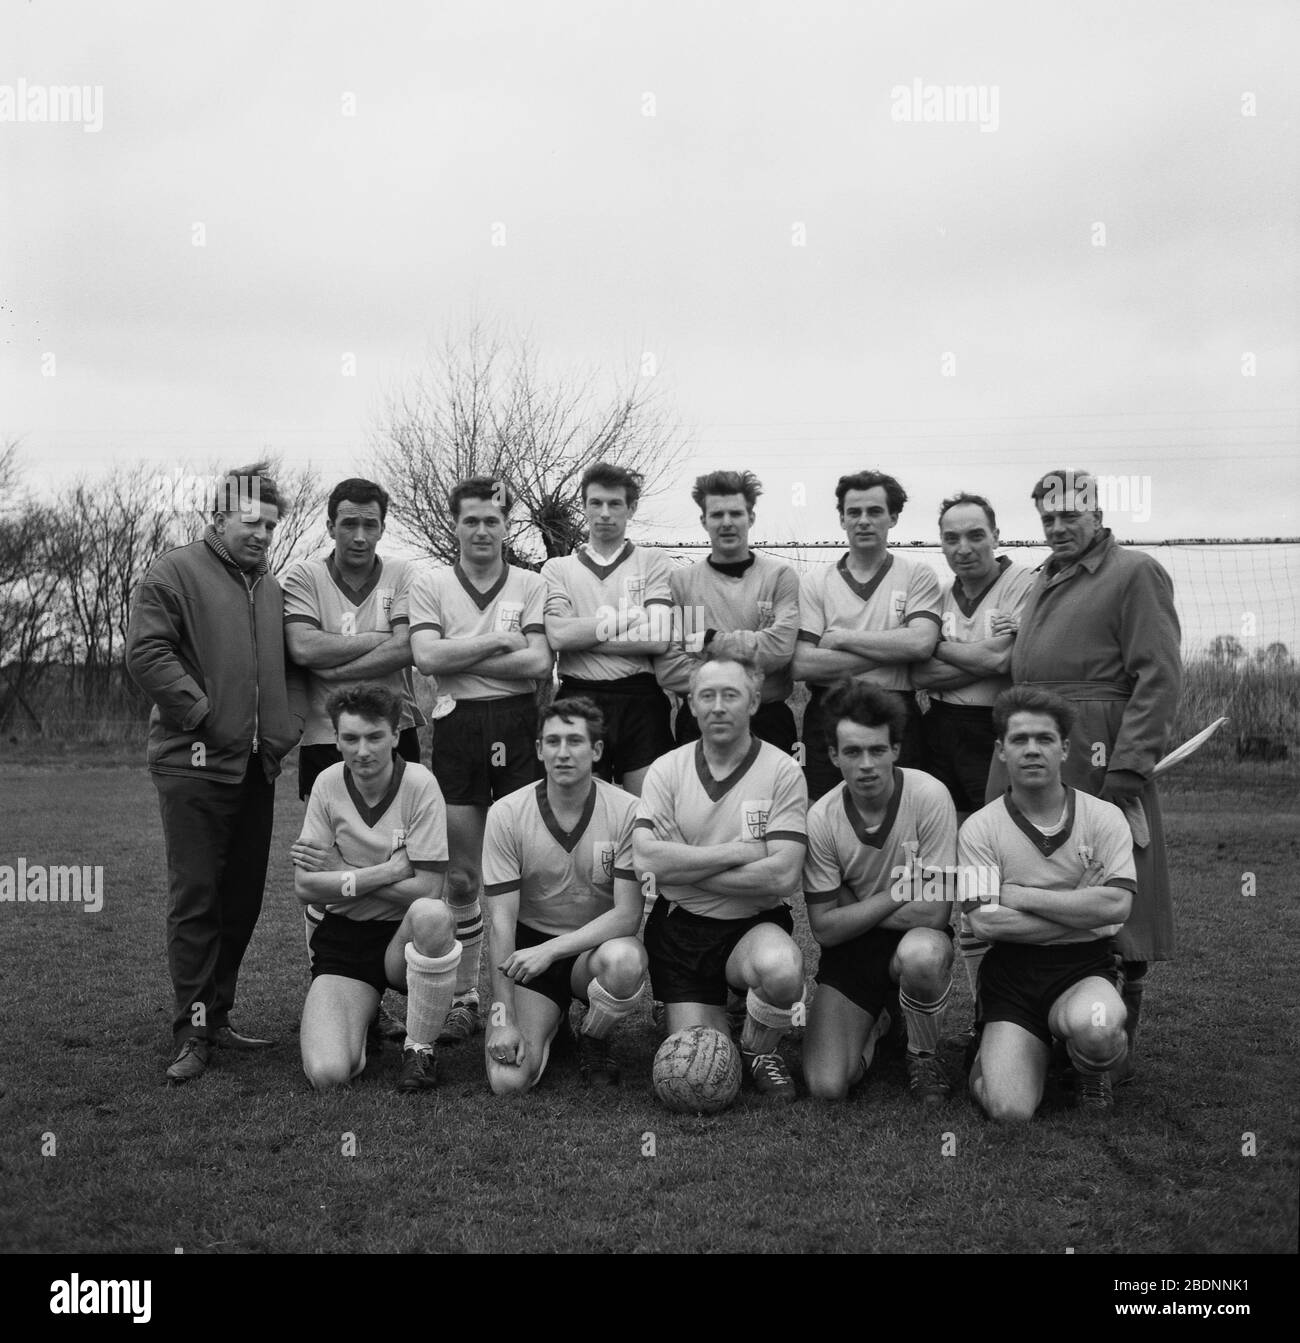 1965, storico, amatoriale calcio, foto di squadra che mostra la divisa di calcio dell'epoca, senza pubblicità o sponsorizzazione sulle semplici magliette v-neck, solo il logo della squadra, Inghilterra, Regno Unito. Foto Stock